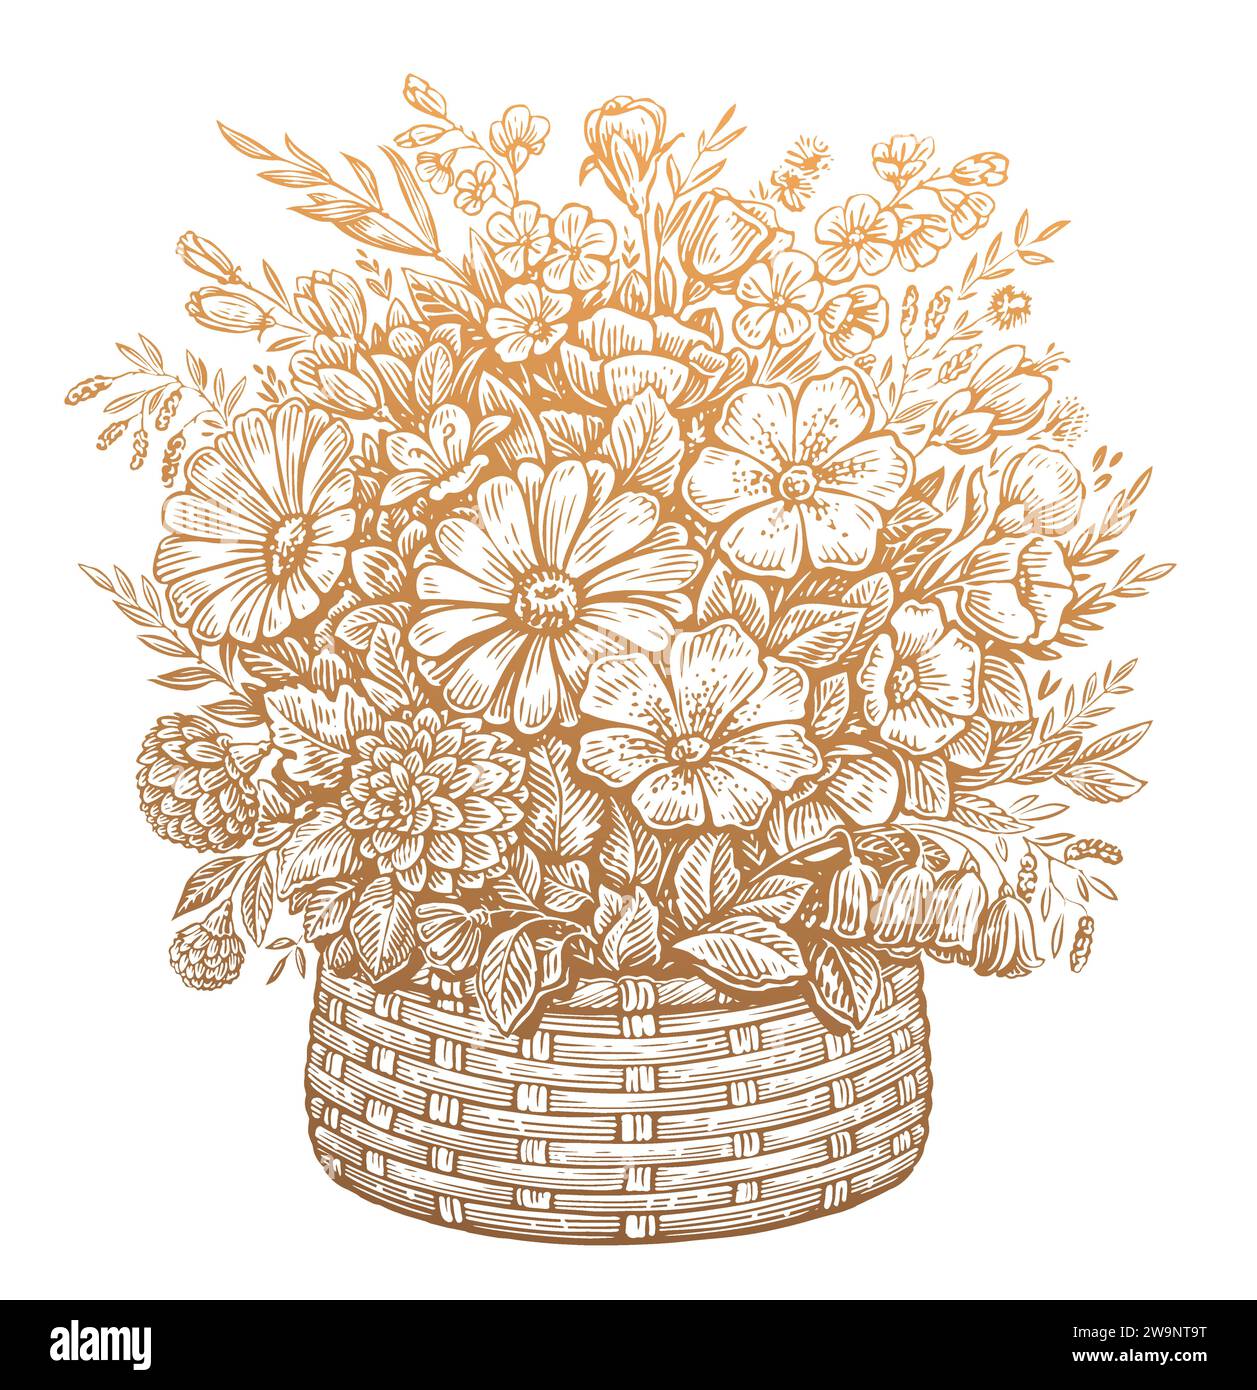 Bellissimo bouquet di fiori selvatici in un cestino, incisione in stile vintage. Illustrazione vettoriale dello schizzo dei fiori Illustrazione Vettoriale